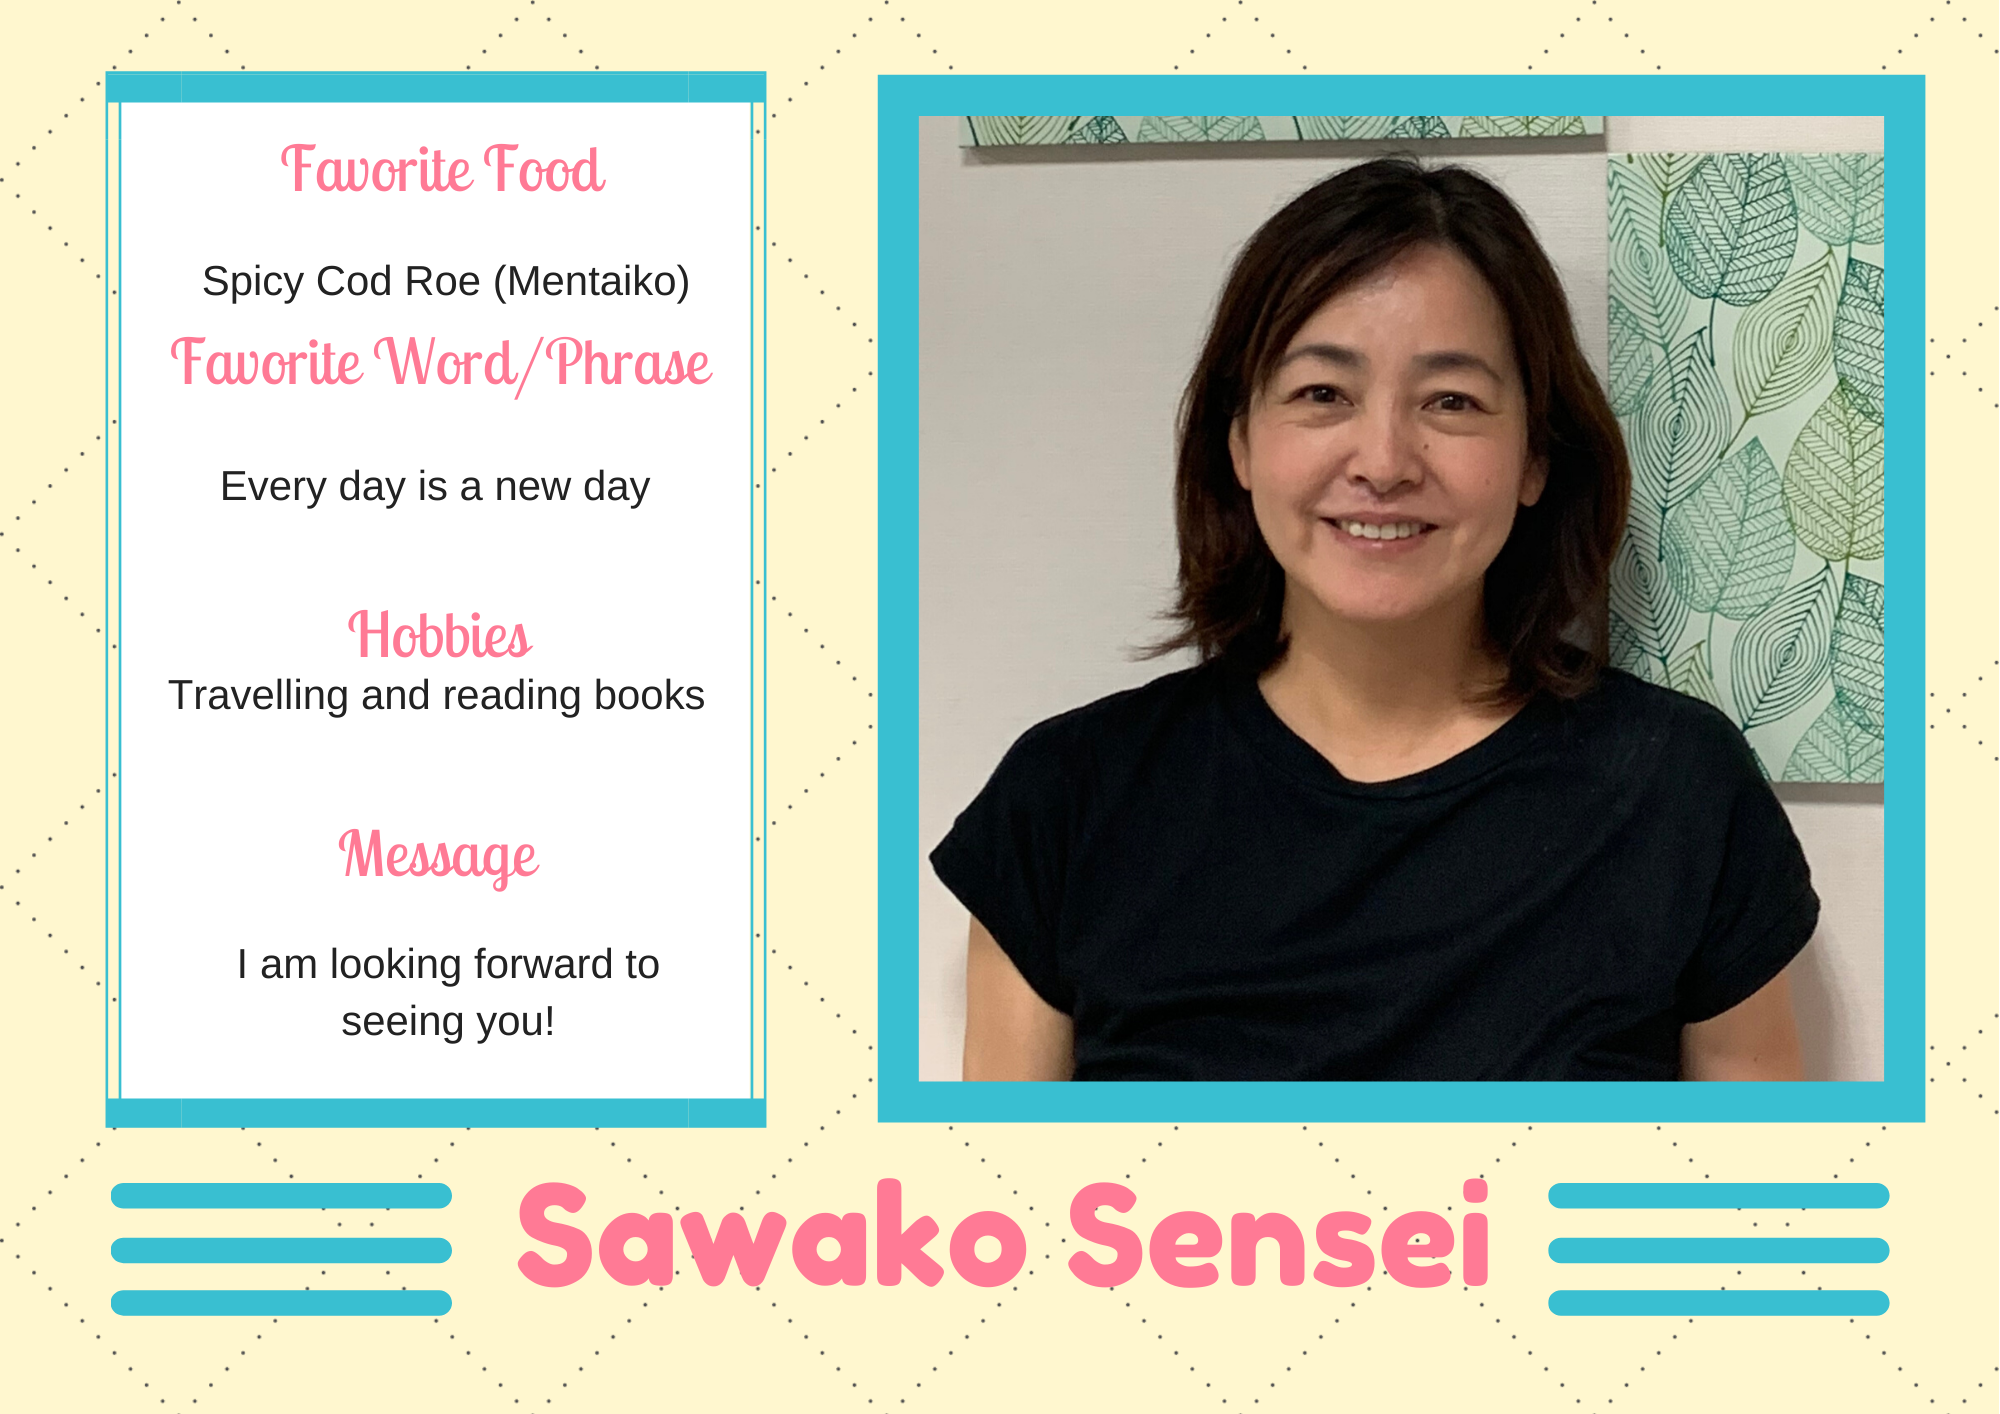 Sawako-sensei